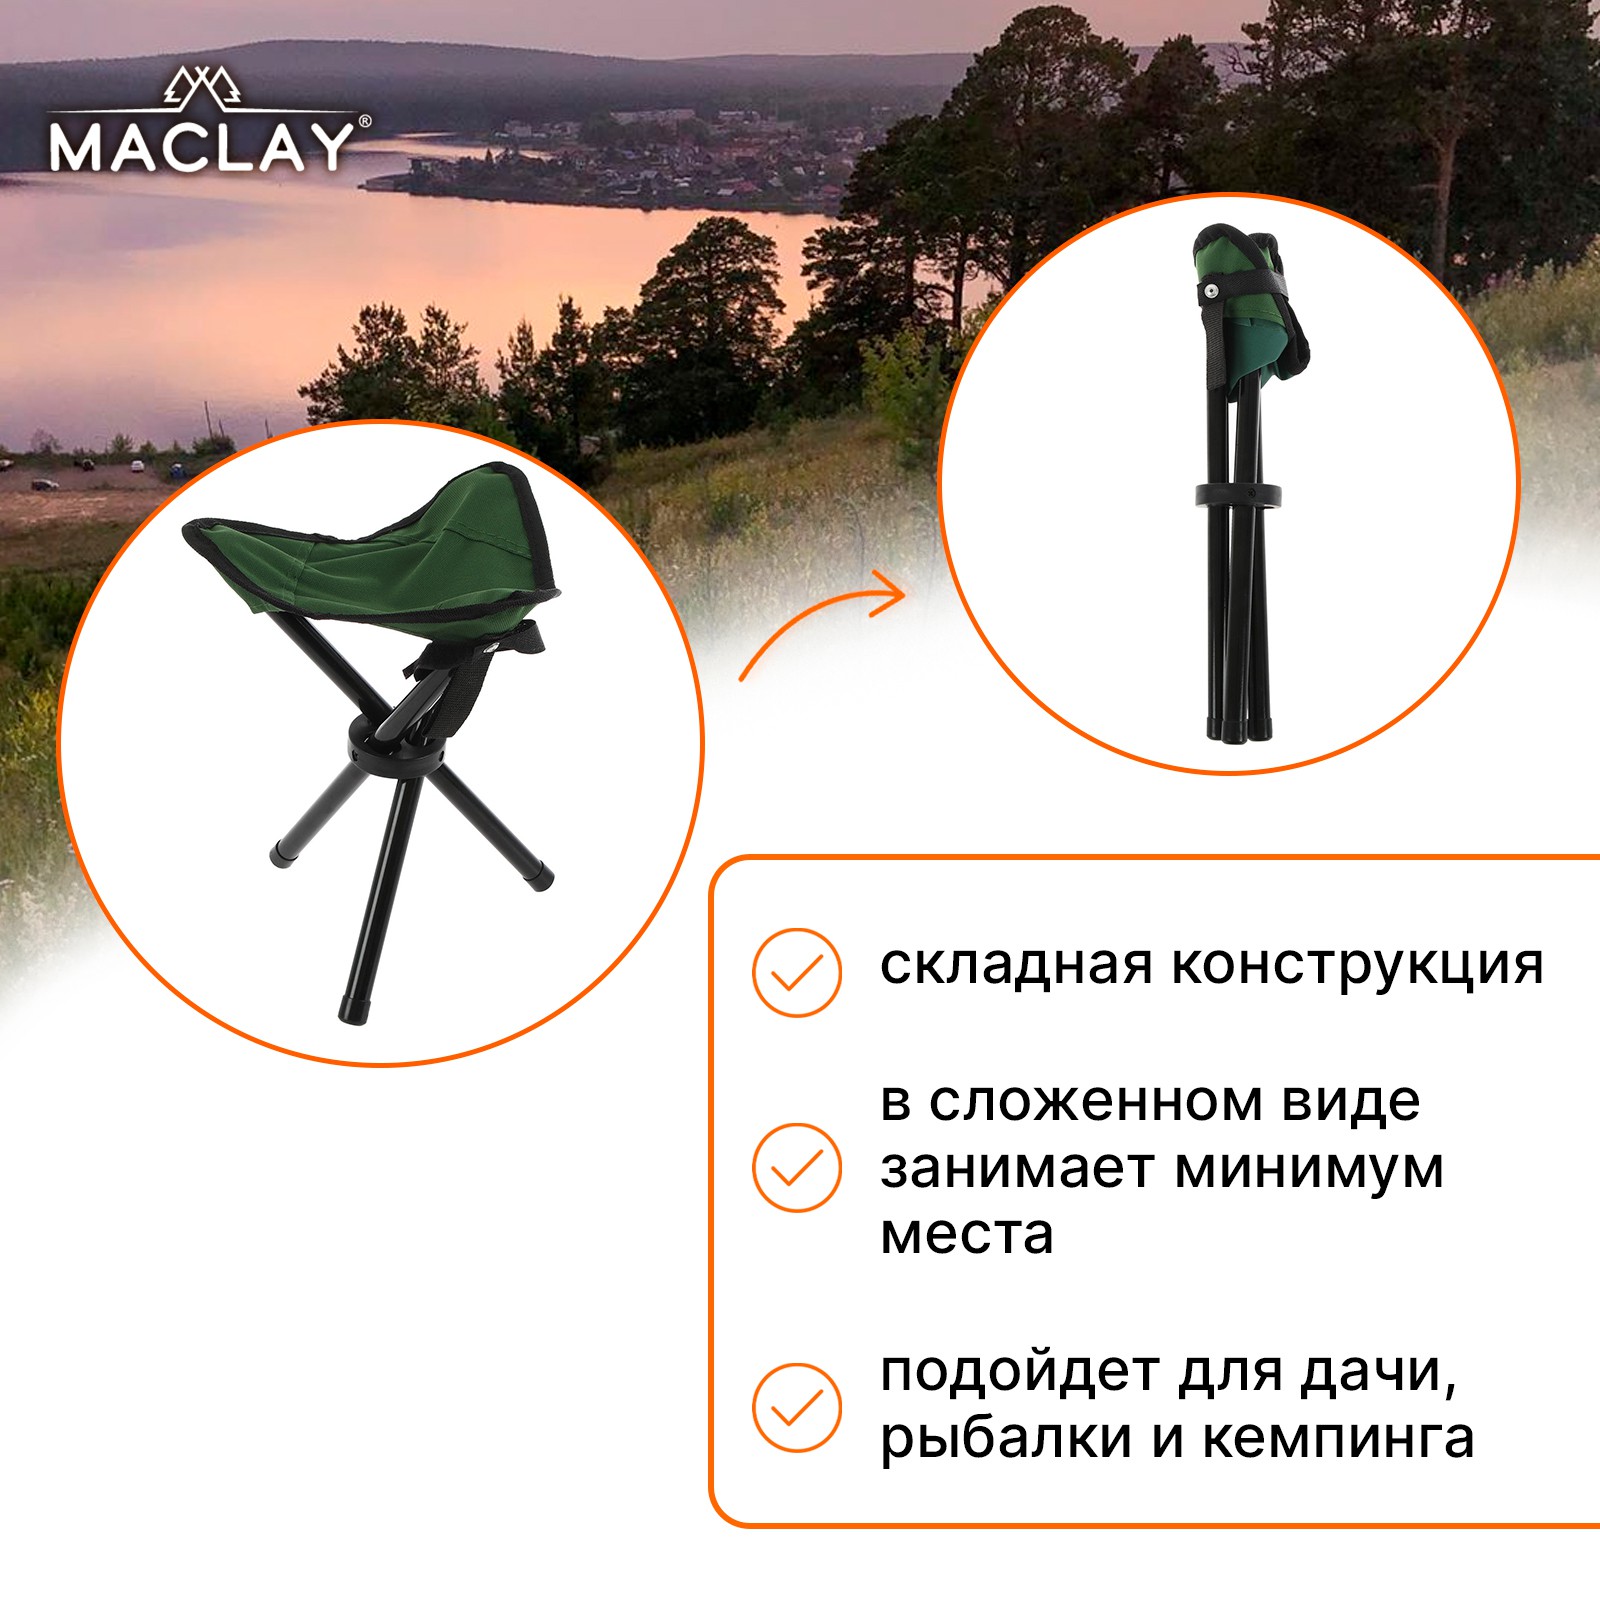 Стул туристический Maclay 22х20х30 см до 60кг зелёный - фото 6